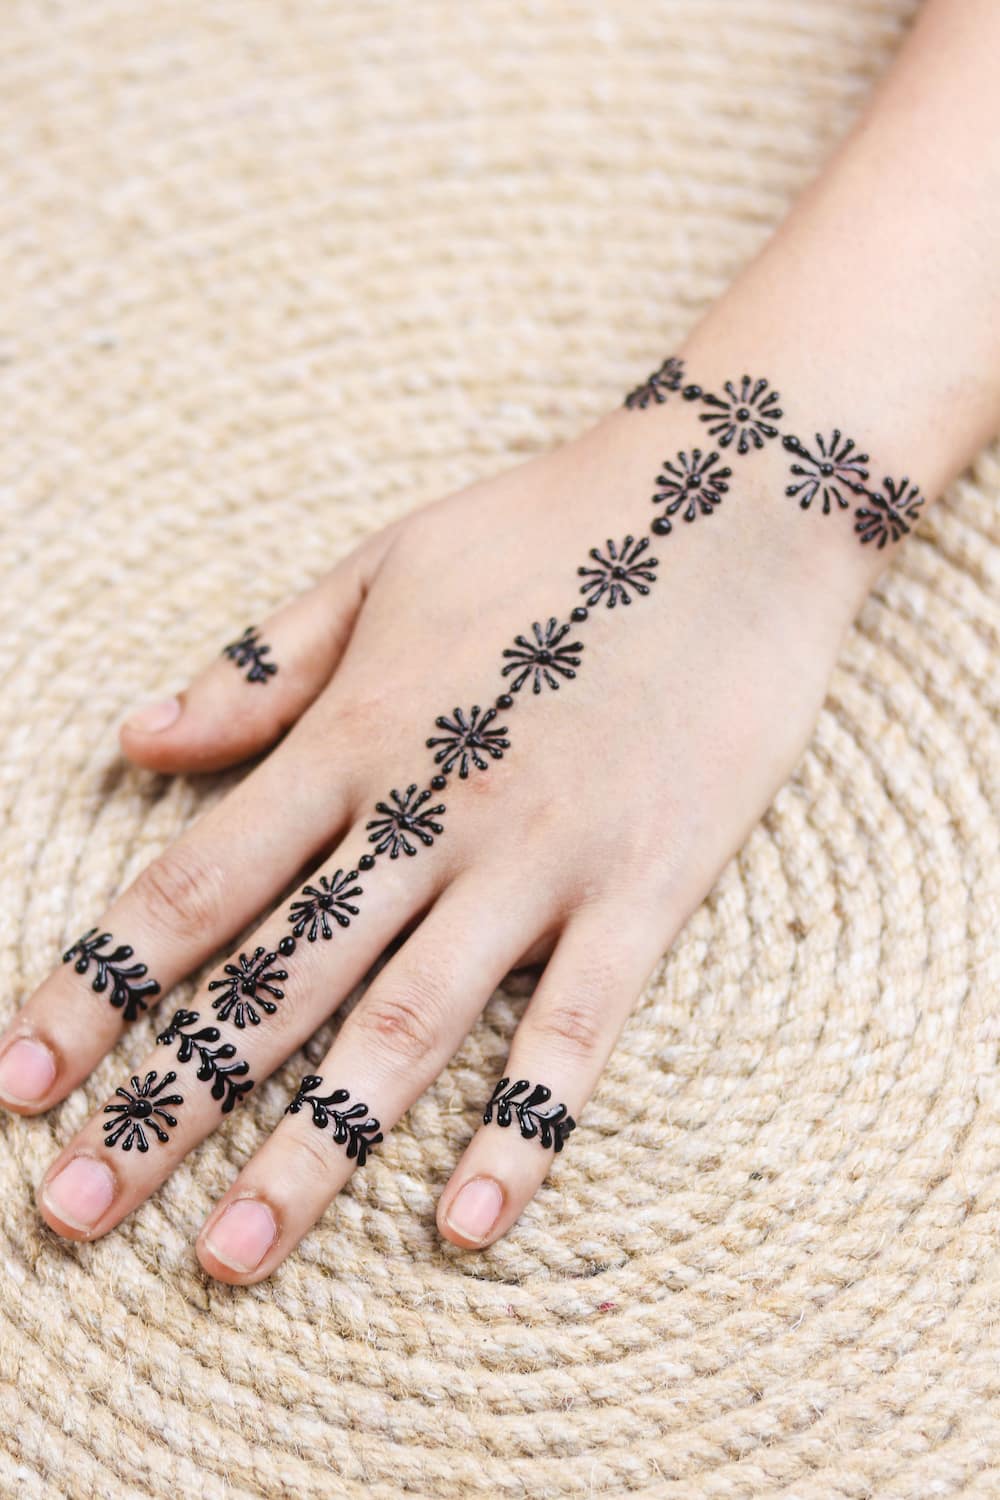 henna designs